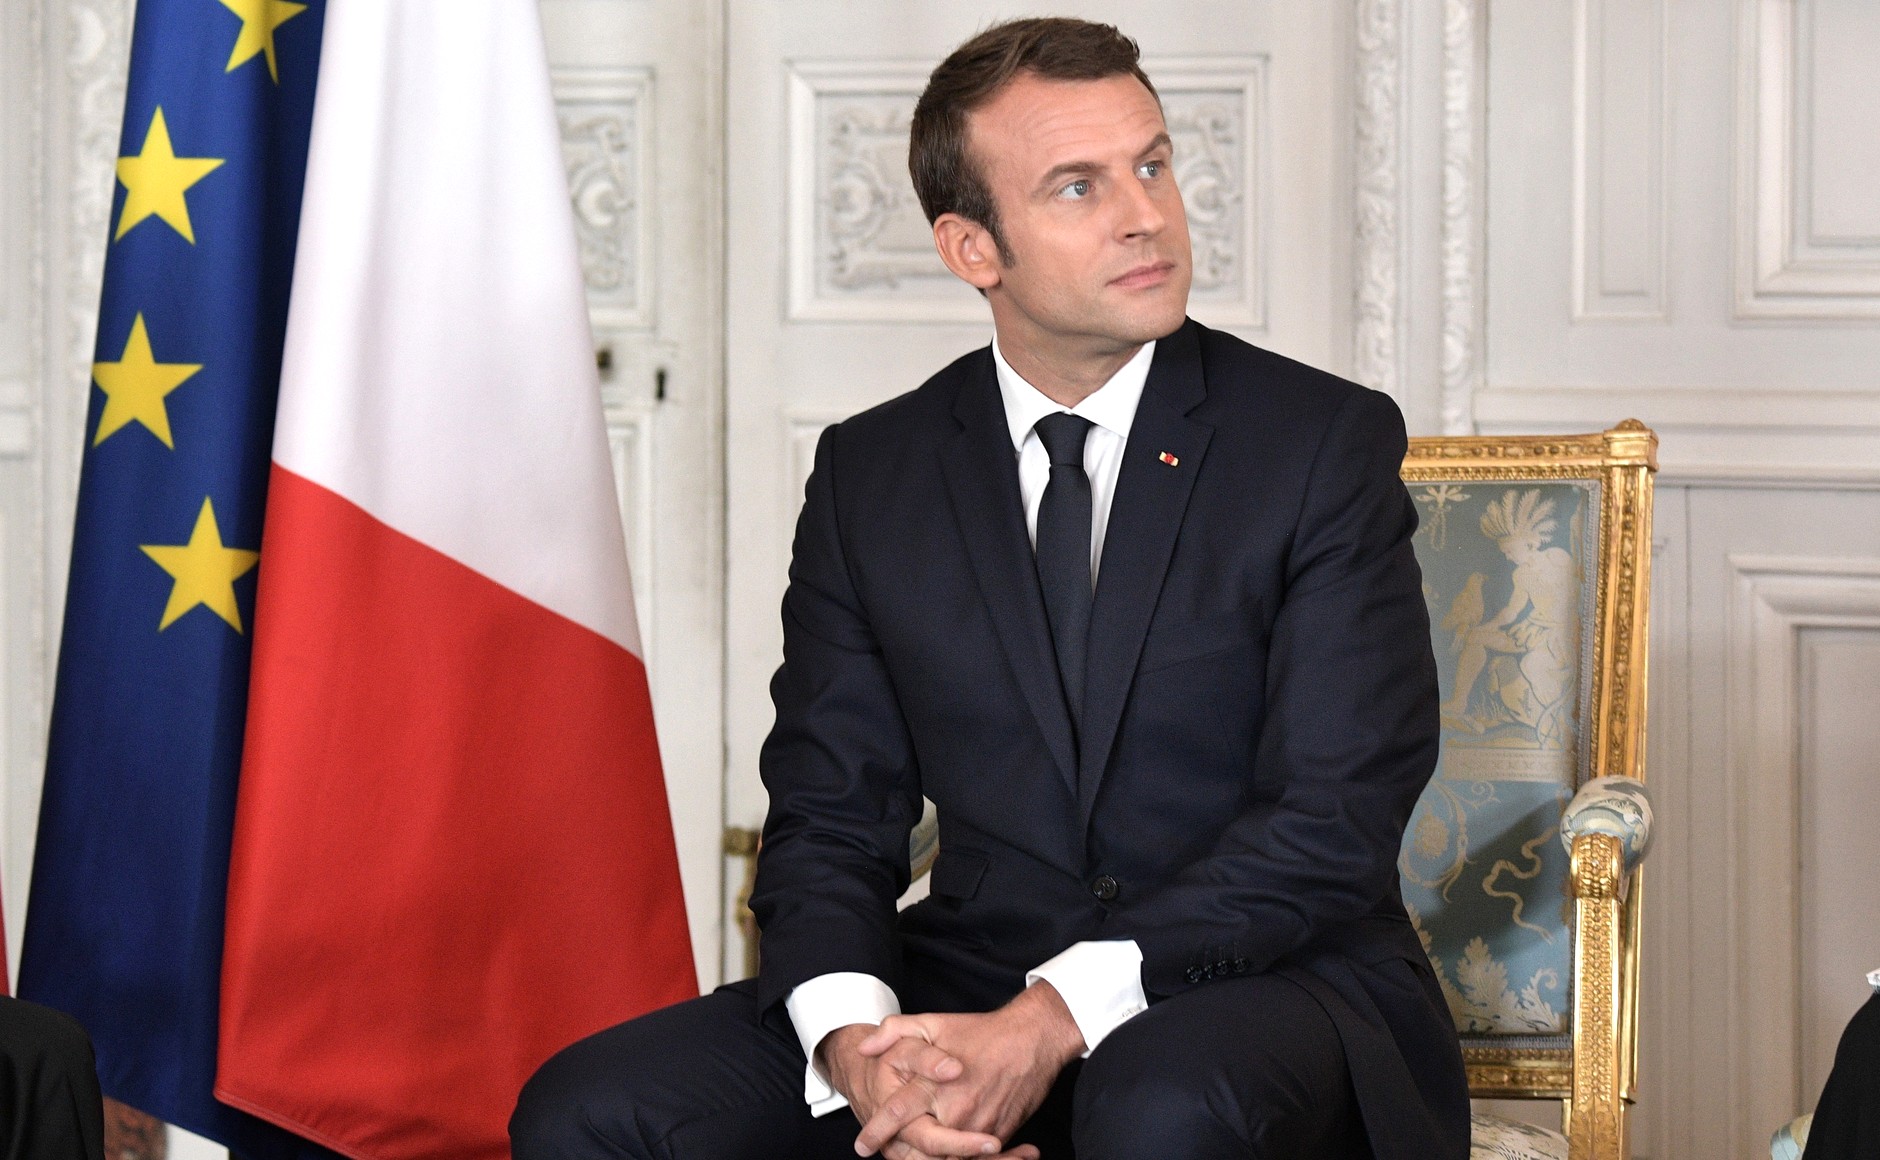     Coronavirus : Macron annonce des mesures fortes 

